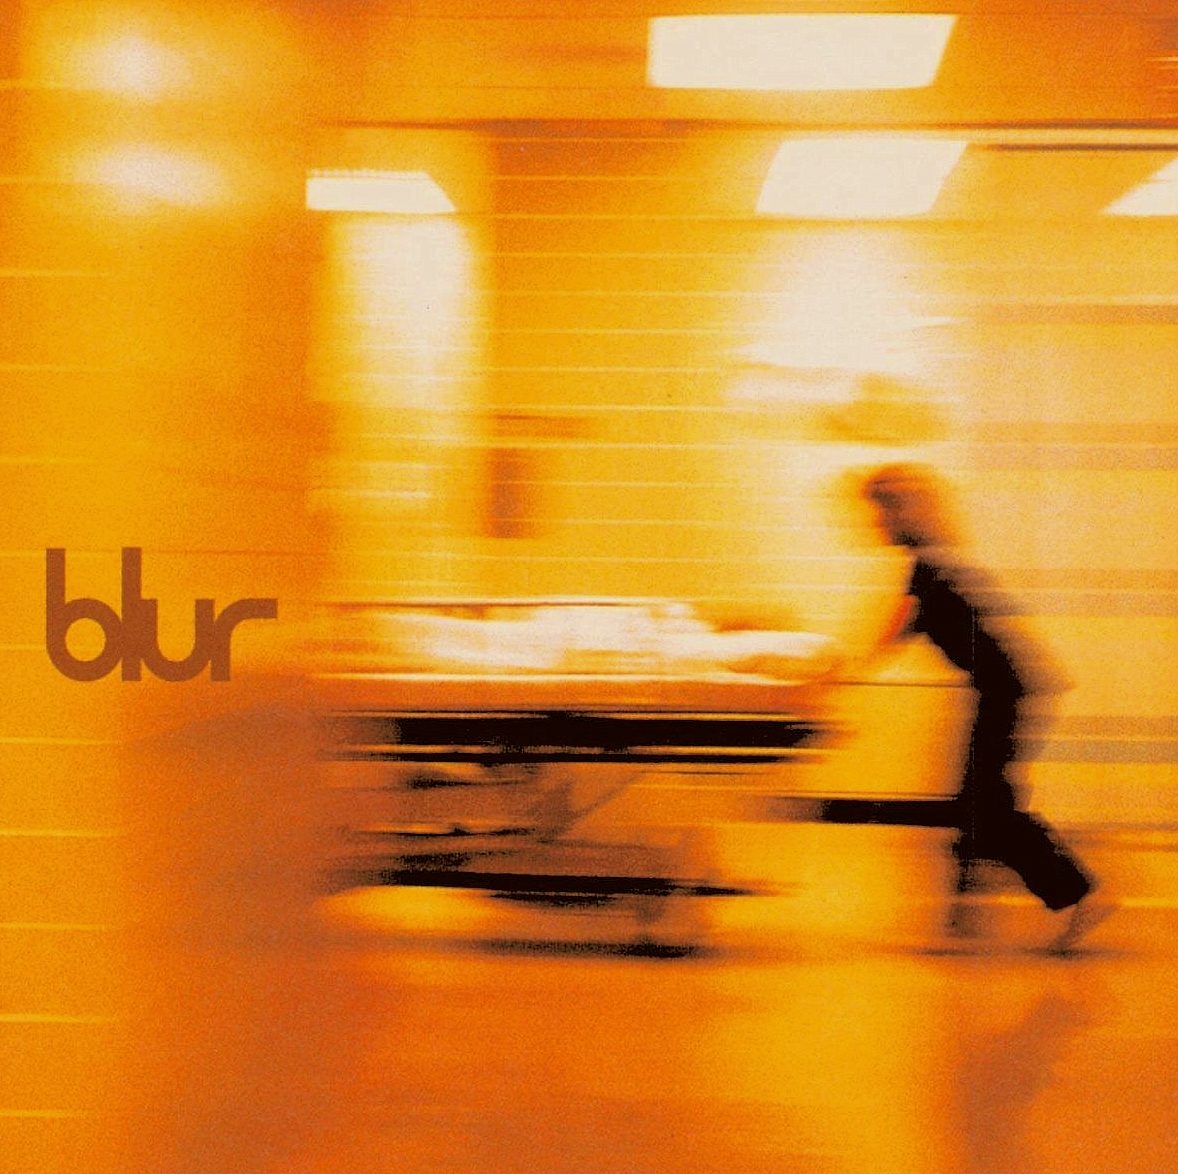 Álbum ‘Blur’ faz hoje 20 anos